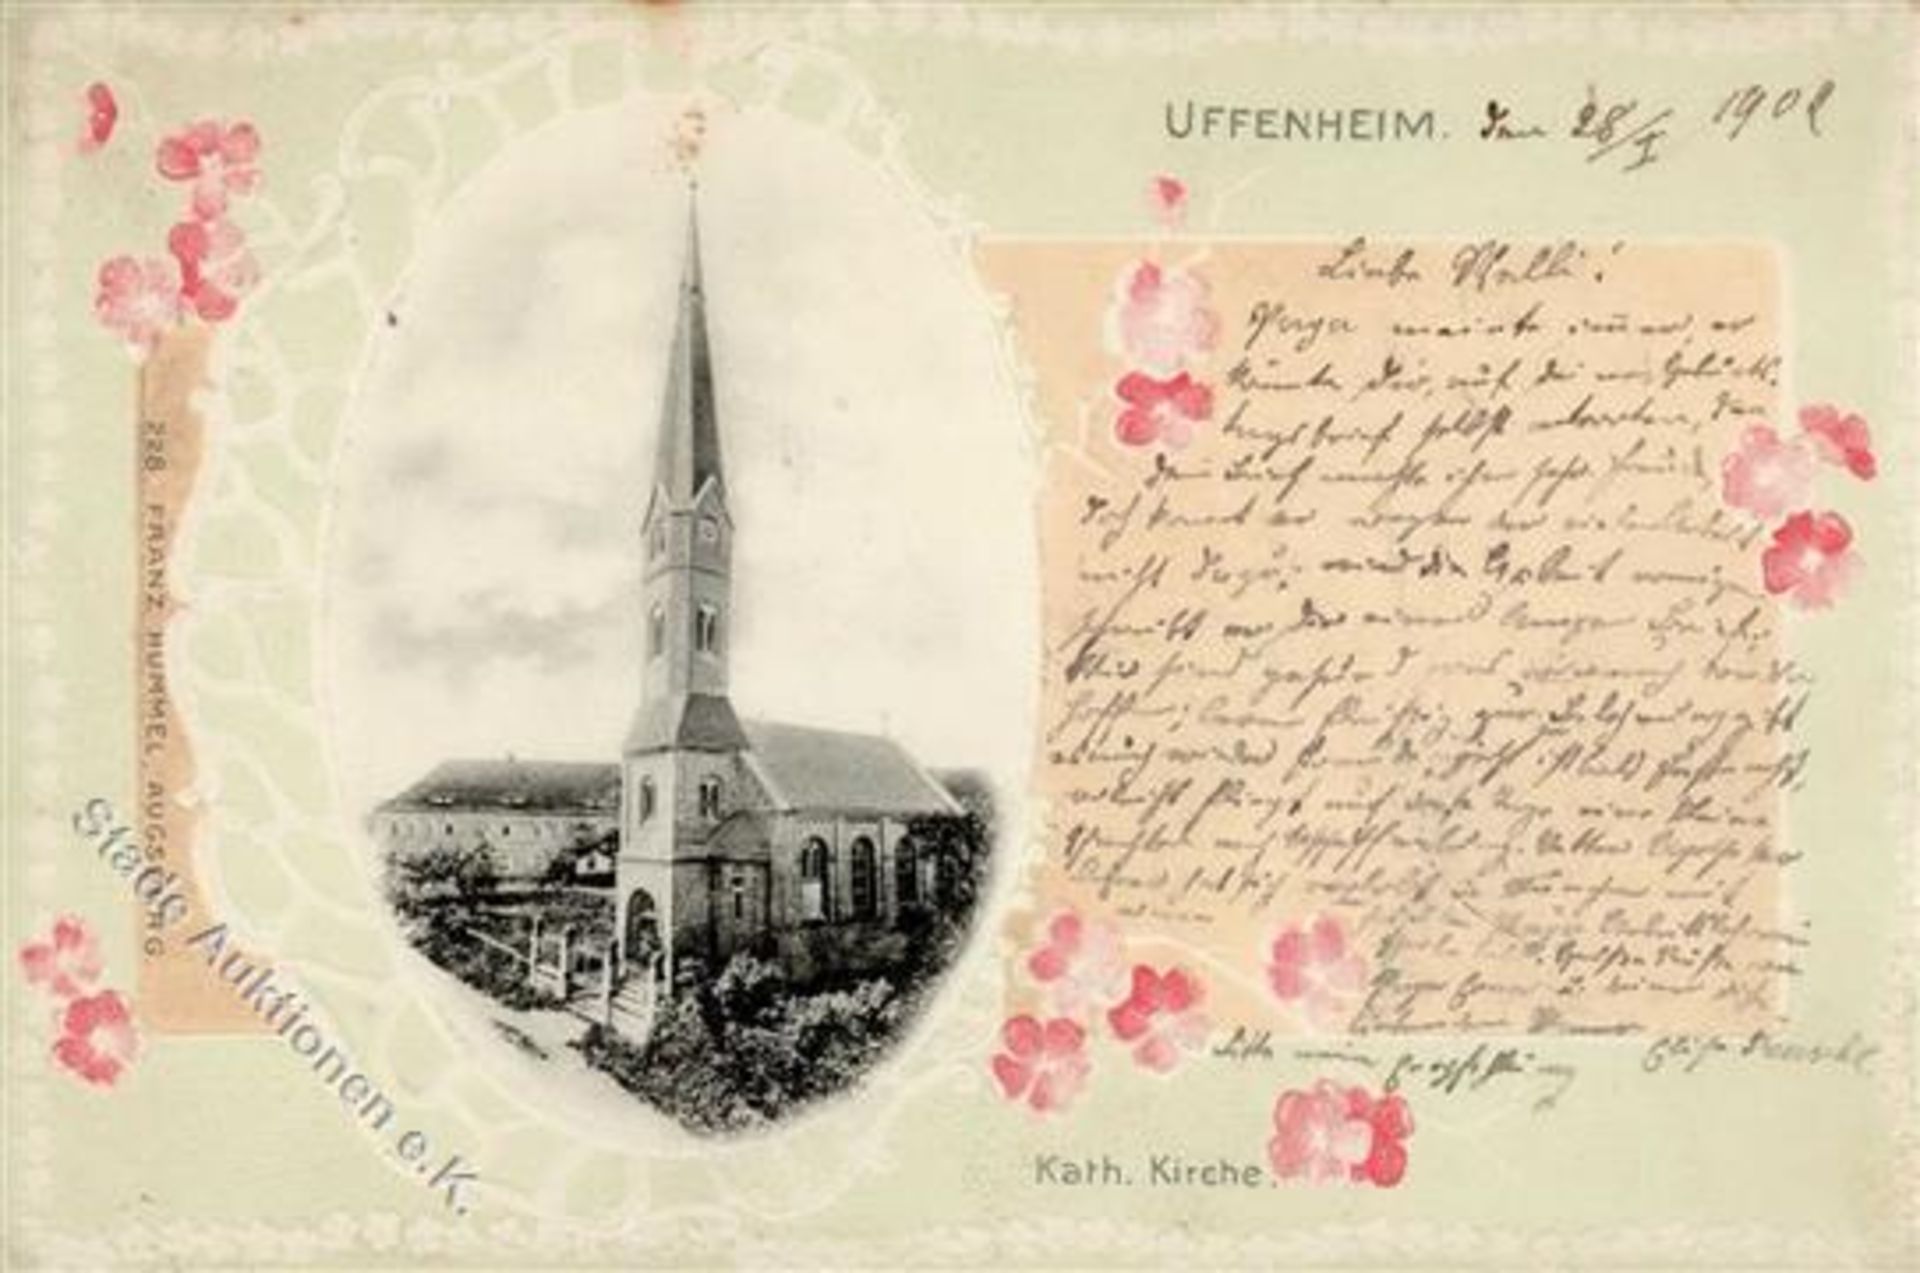 Uffenheim (8704) Kath. Kirche Prägedruck 1902 I-II (Ecken abgestossen, fleckig)Dieses Los wird in